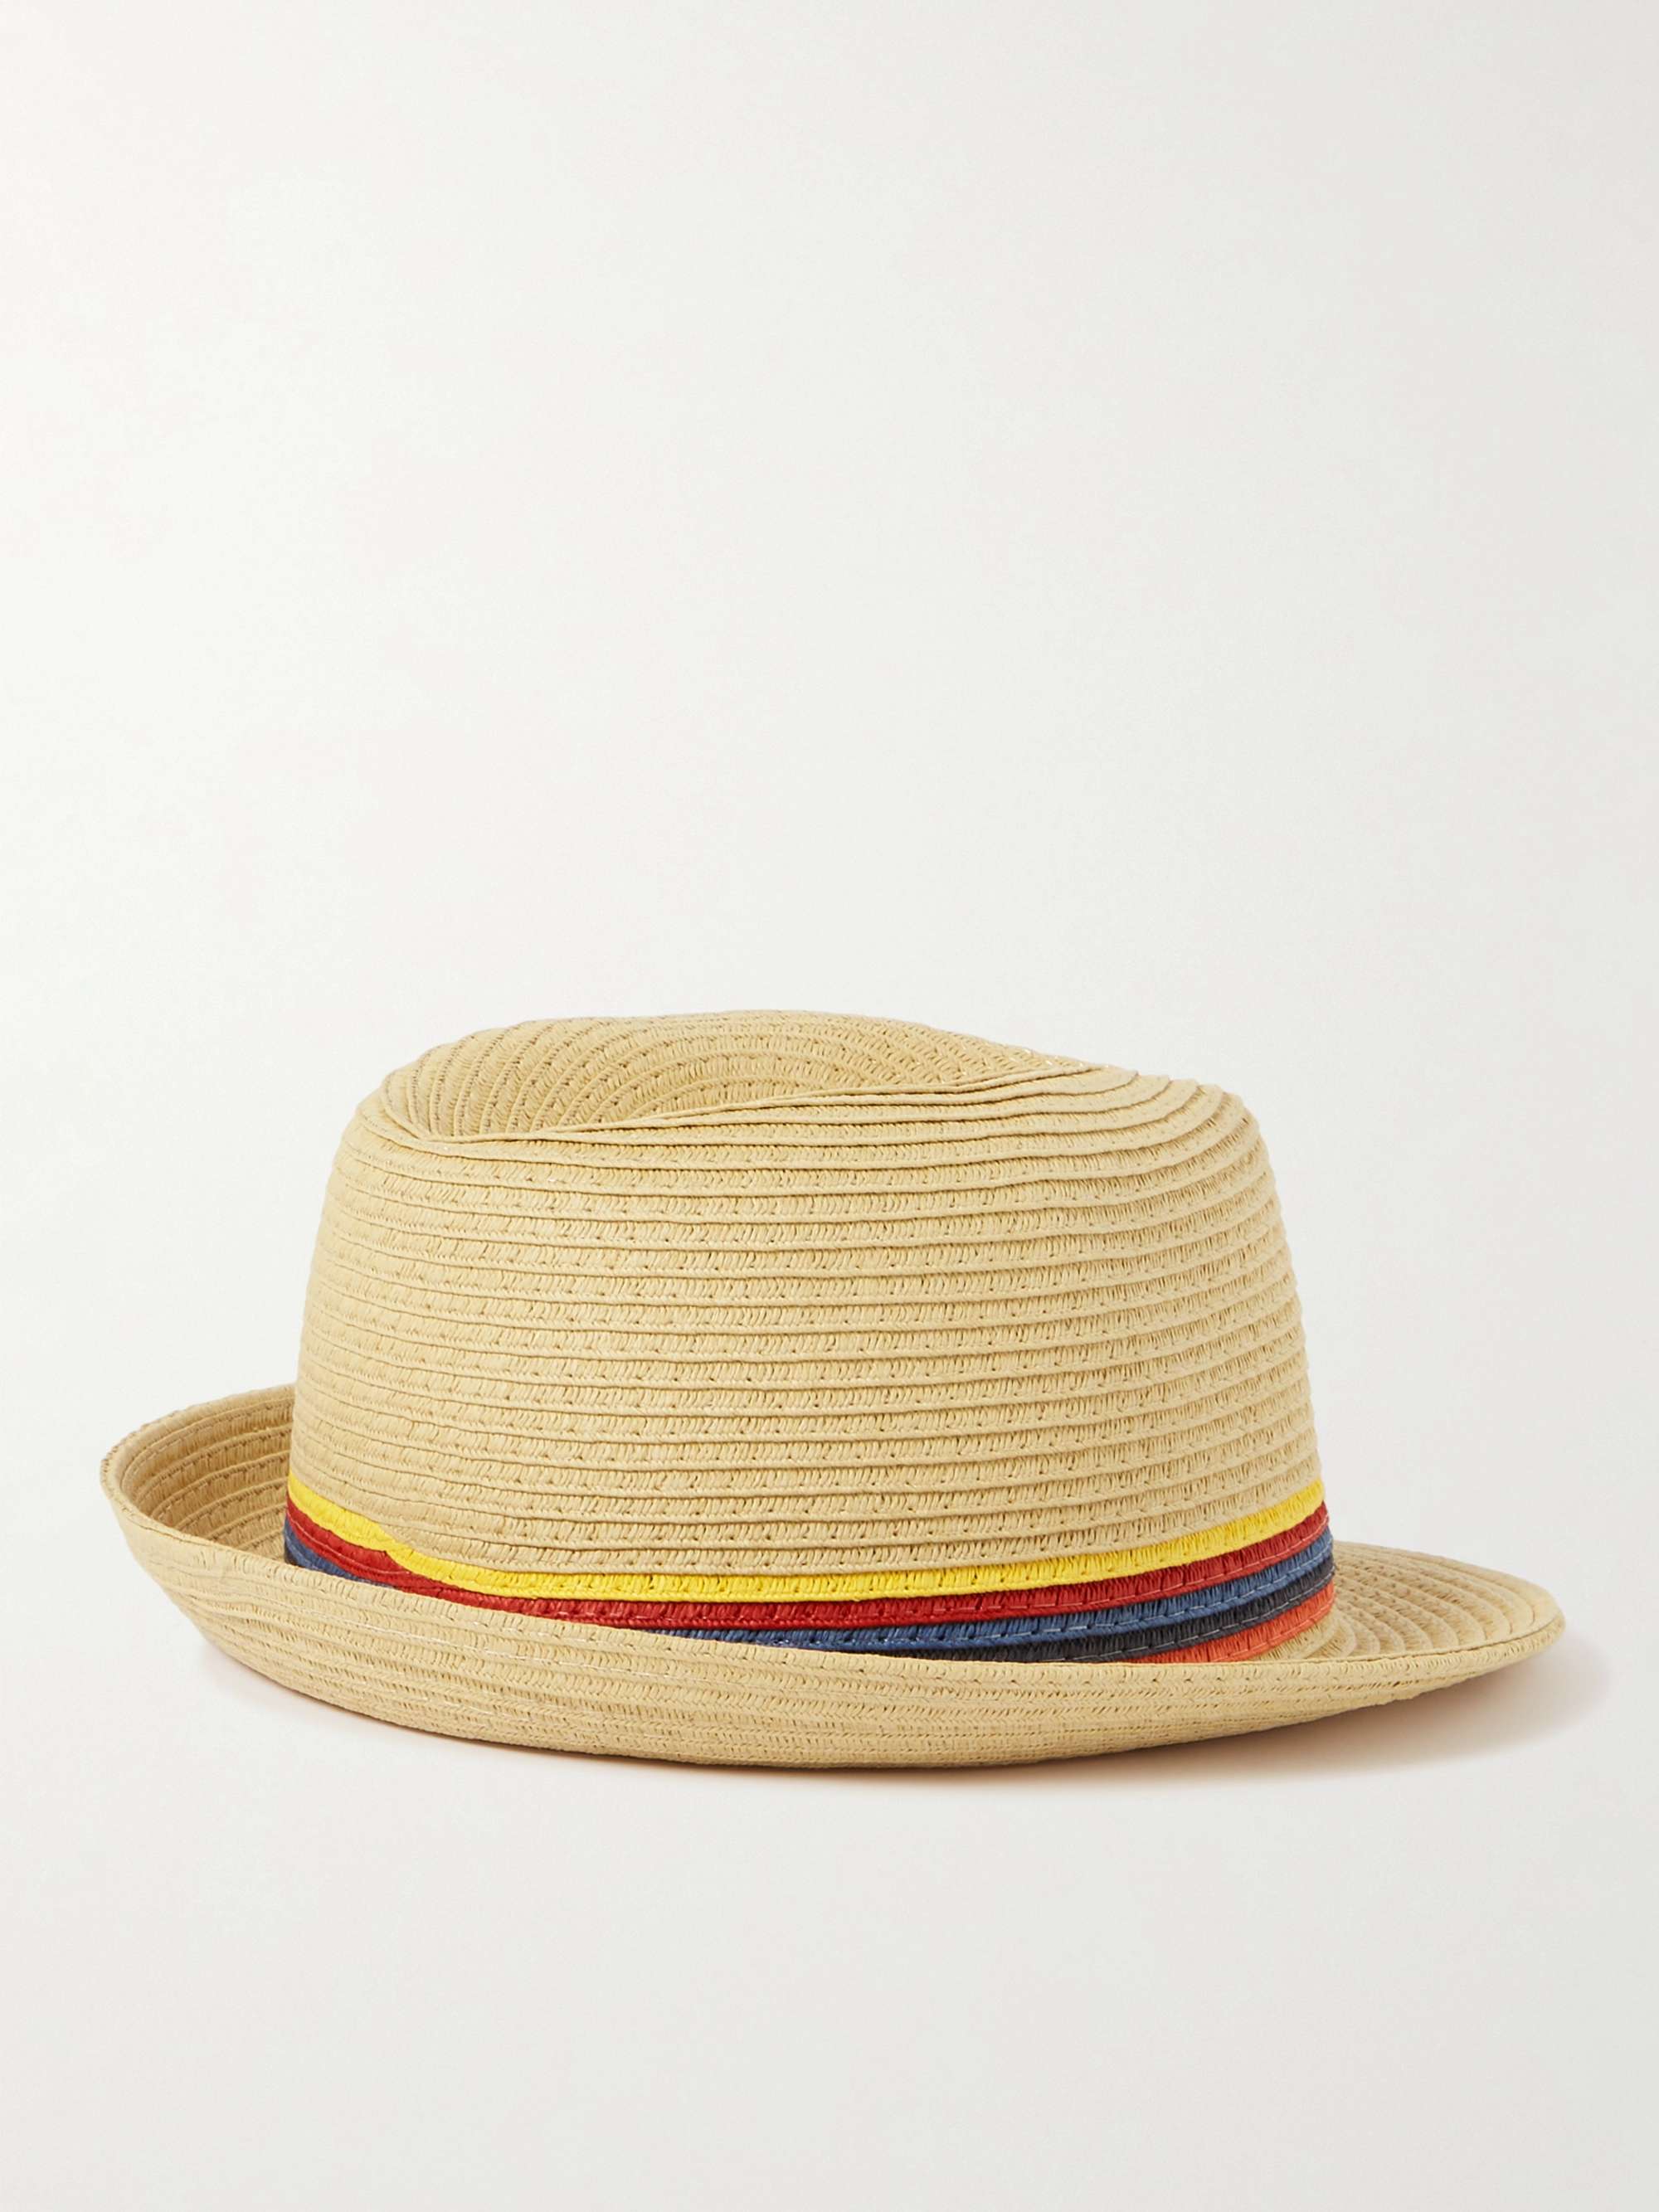 PAUL SMITH Striped Straw Trilby Hat